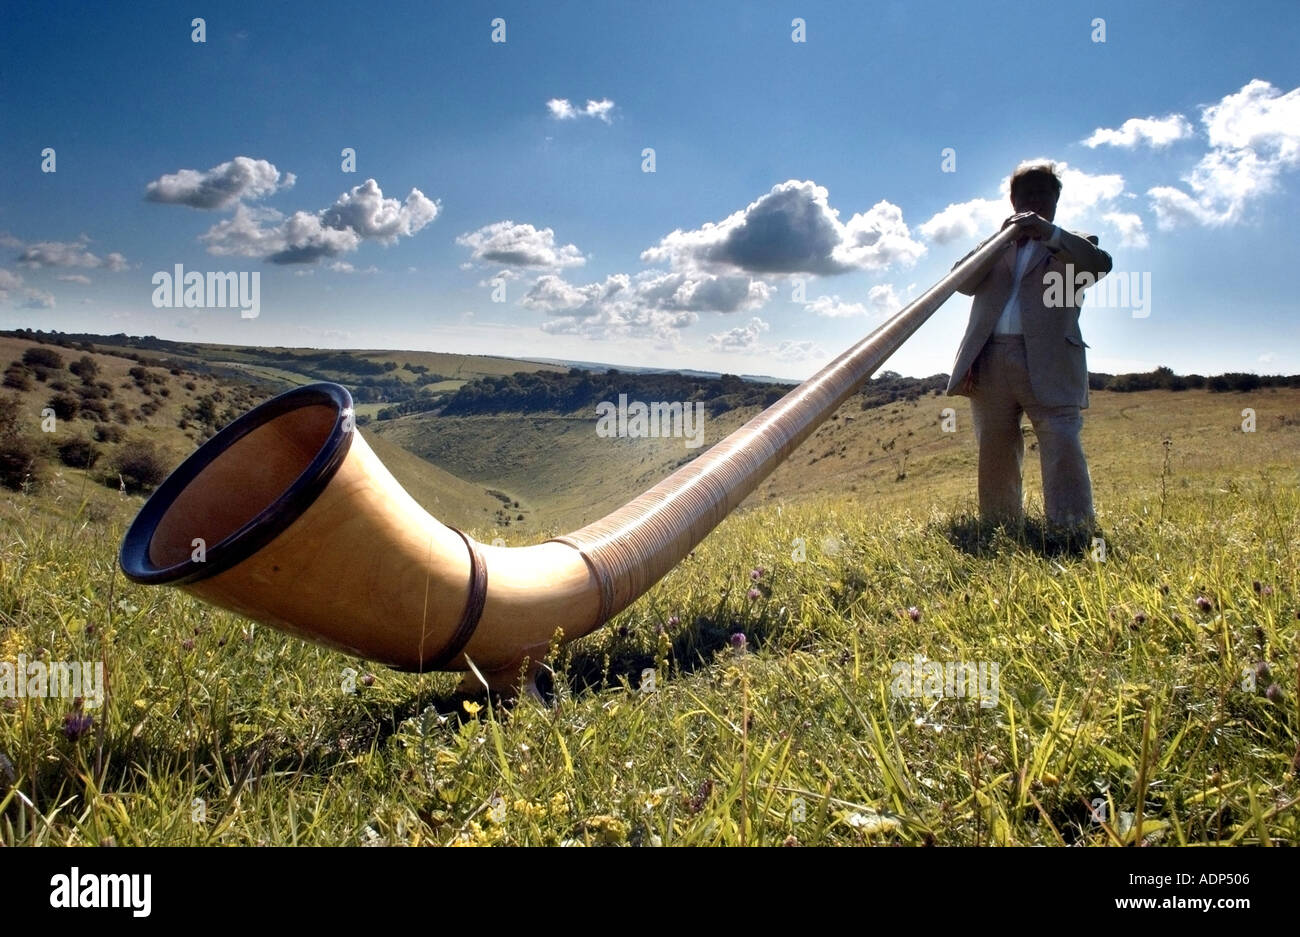 man-playing-an-alpenhorn-or-alphorn-the-strange-swiss-musical-instrument-ADP506.jpg